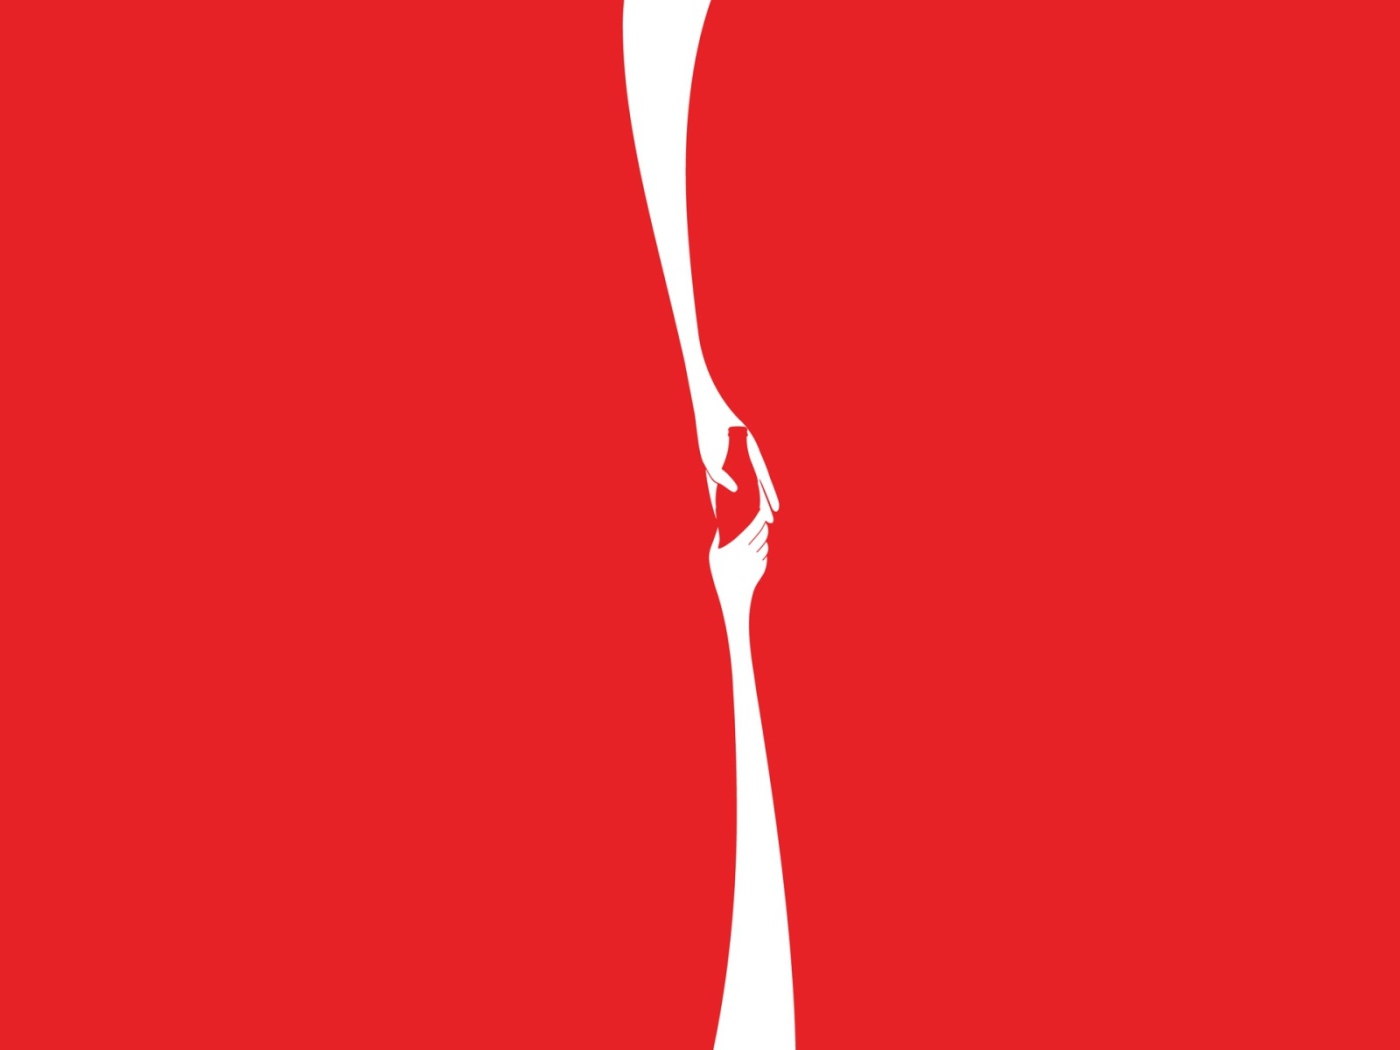 Реклама Кока-колы